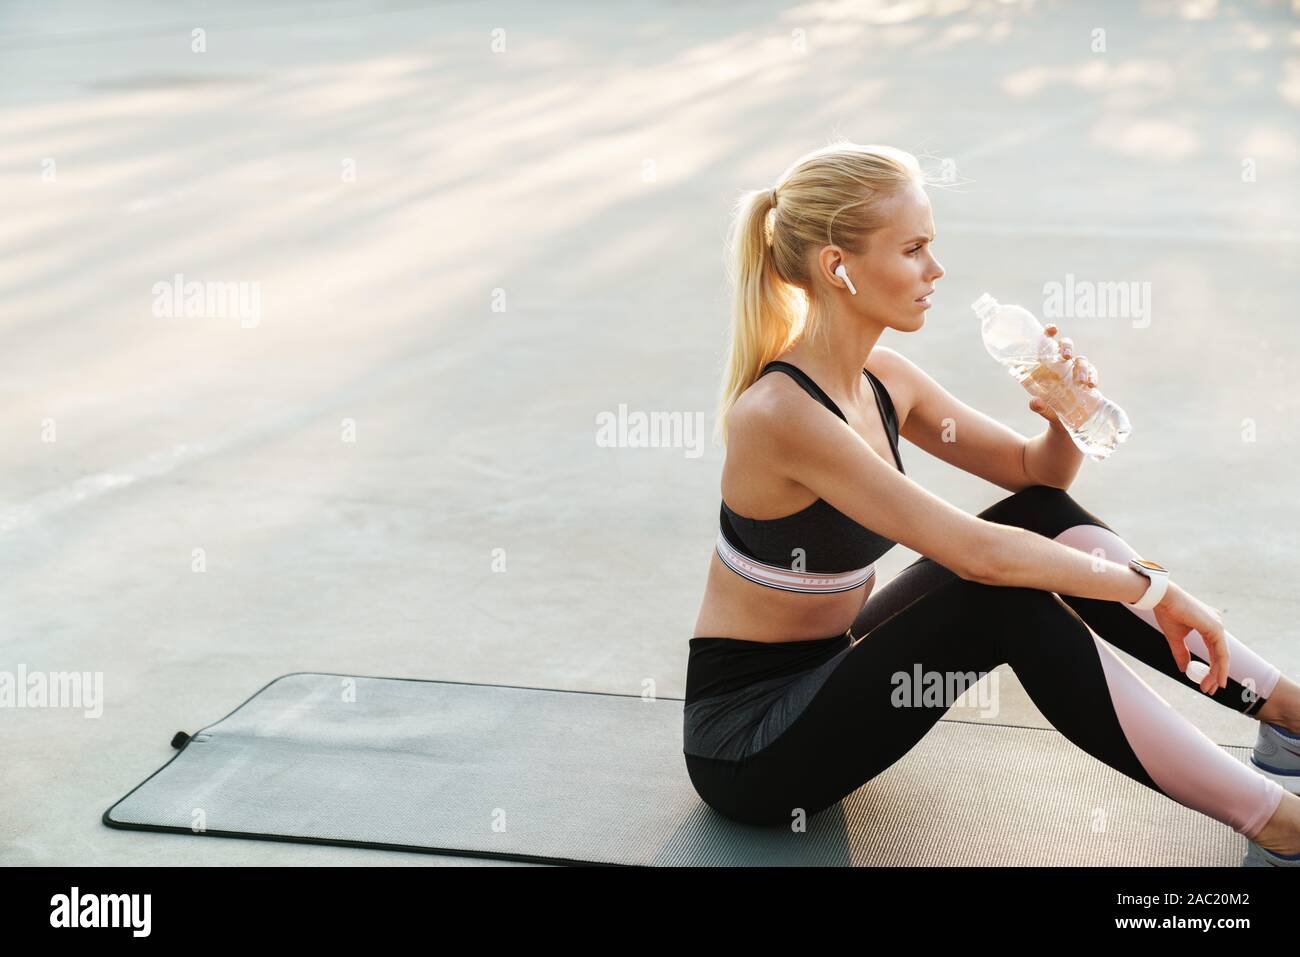 Bild des fokussierten Sportlerin im Trainingsanzug Trinkwasser während des Trainings auf Fitness Matte im Freien Stockfoto